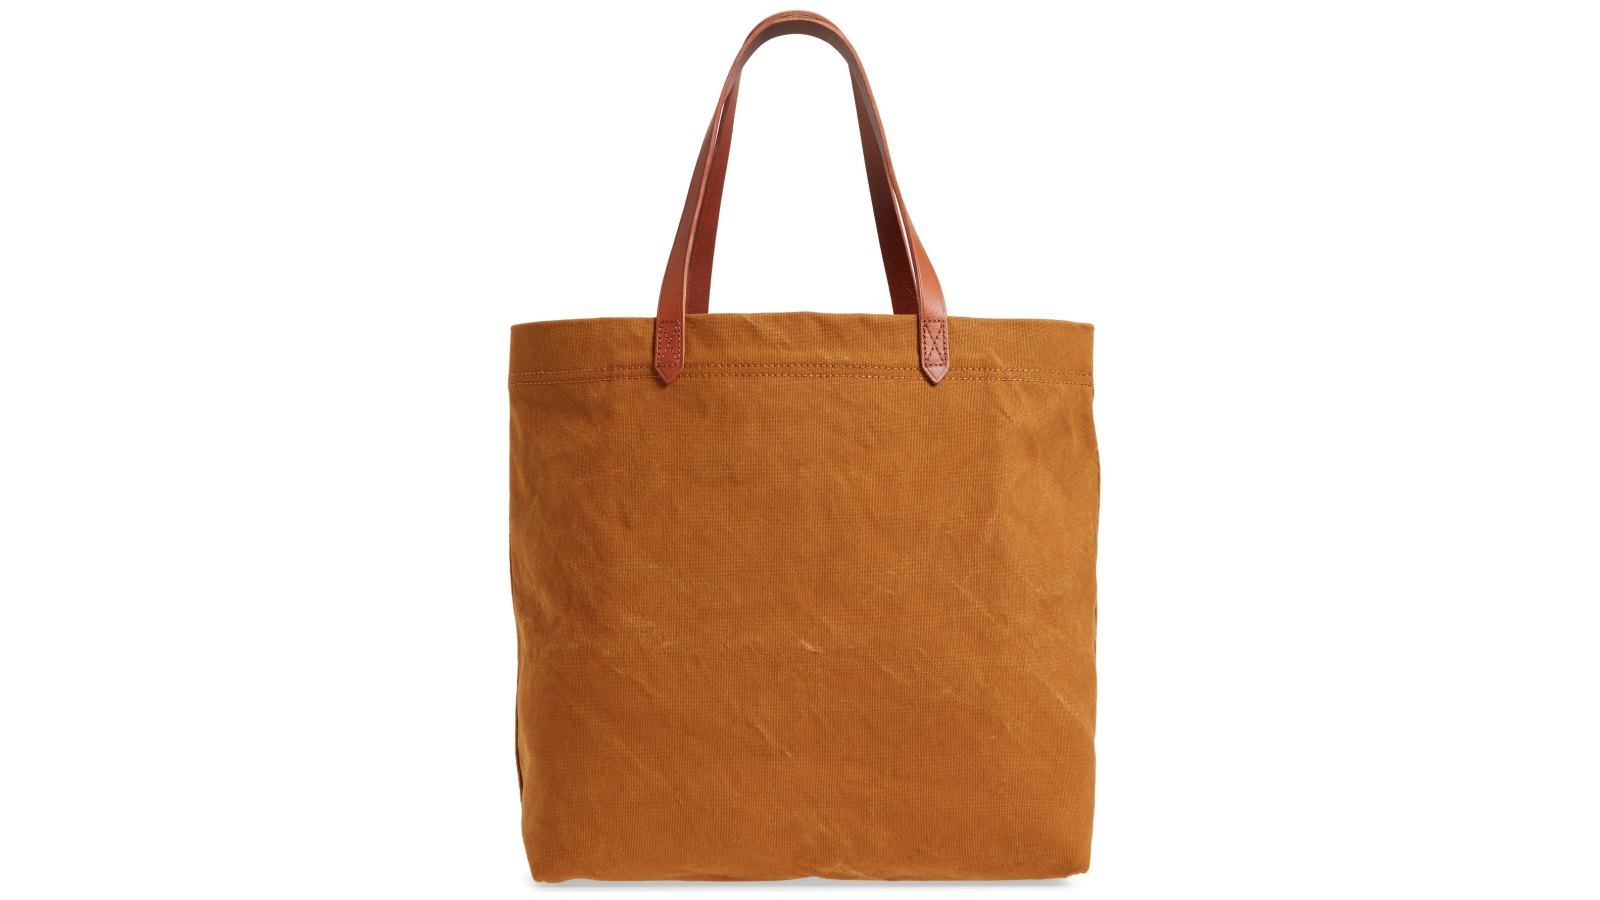 madewell tote bag